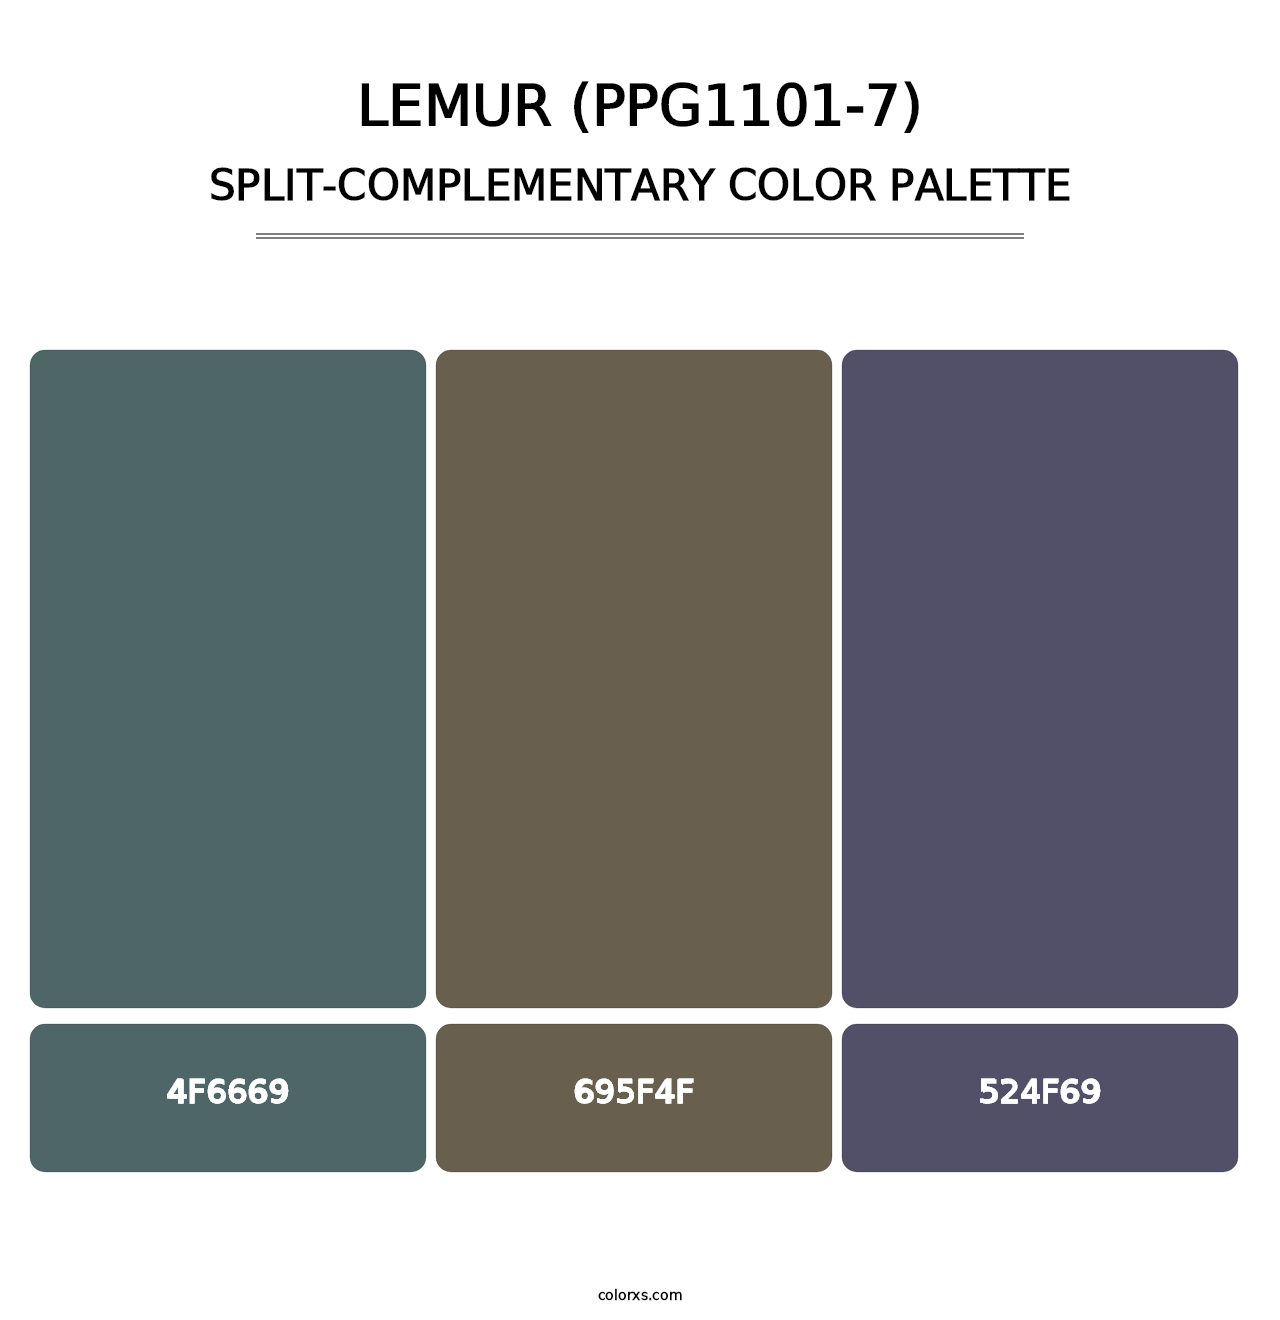 Lemur (PPG1101-7) - Split-Complementary Color Palette